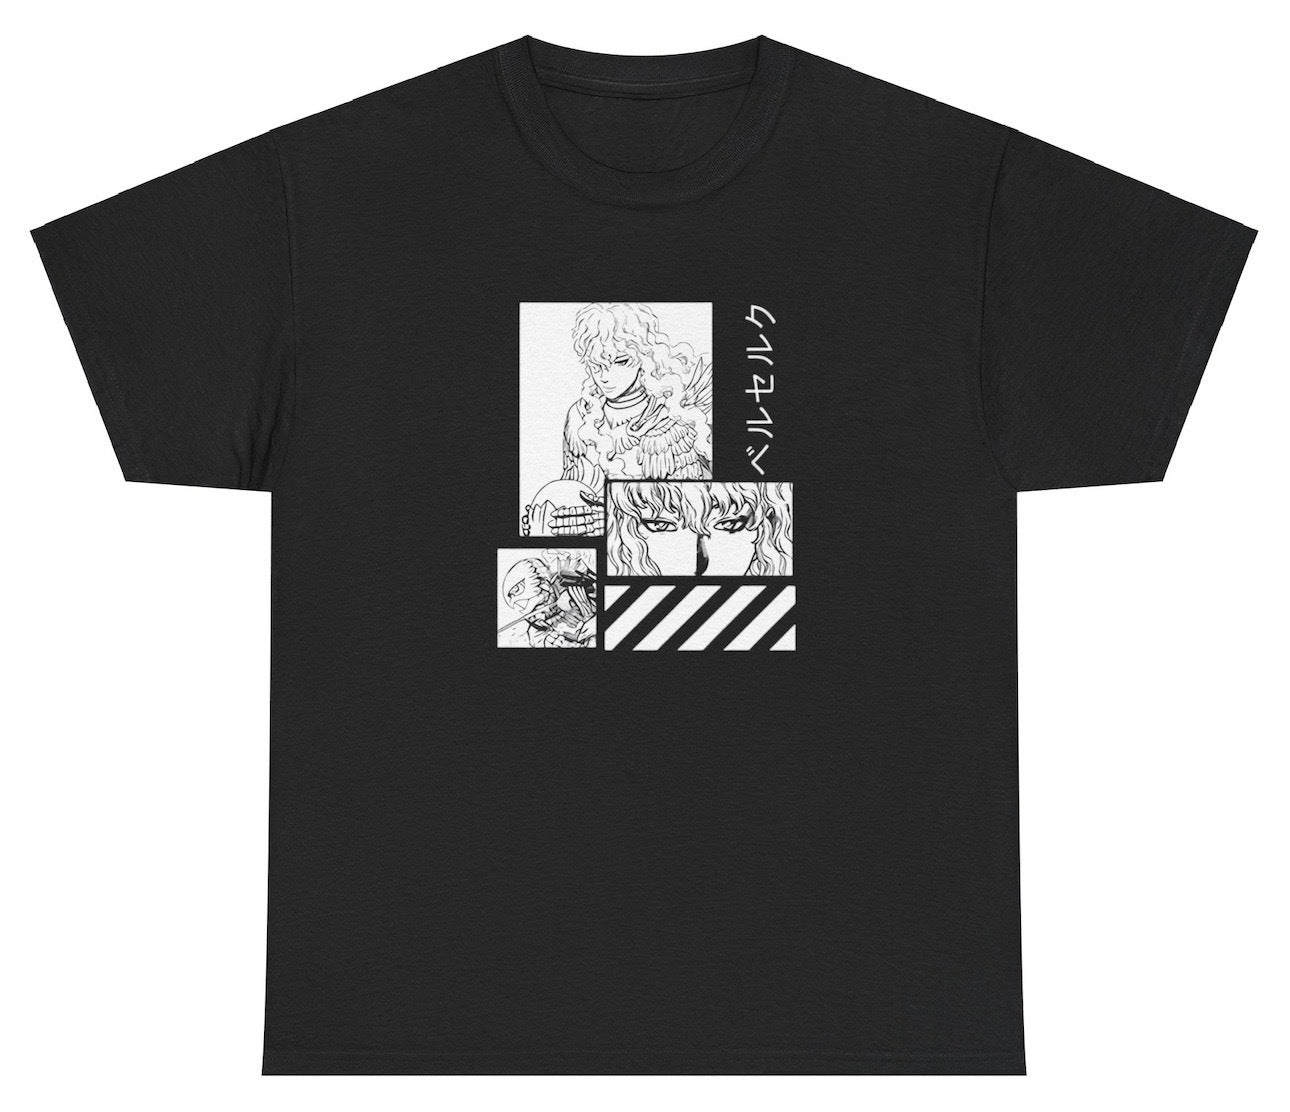 AAA Griffin Berserk T Shirt Pump Cover Guts Berserker Manga Anime Vintage Style Tee